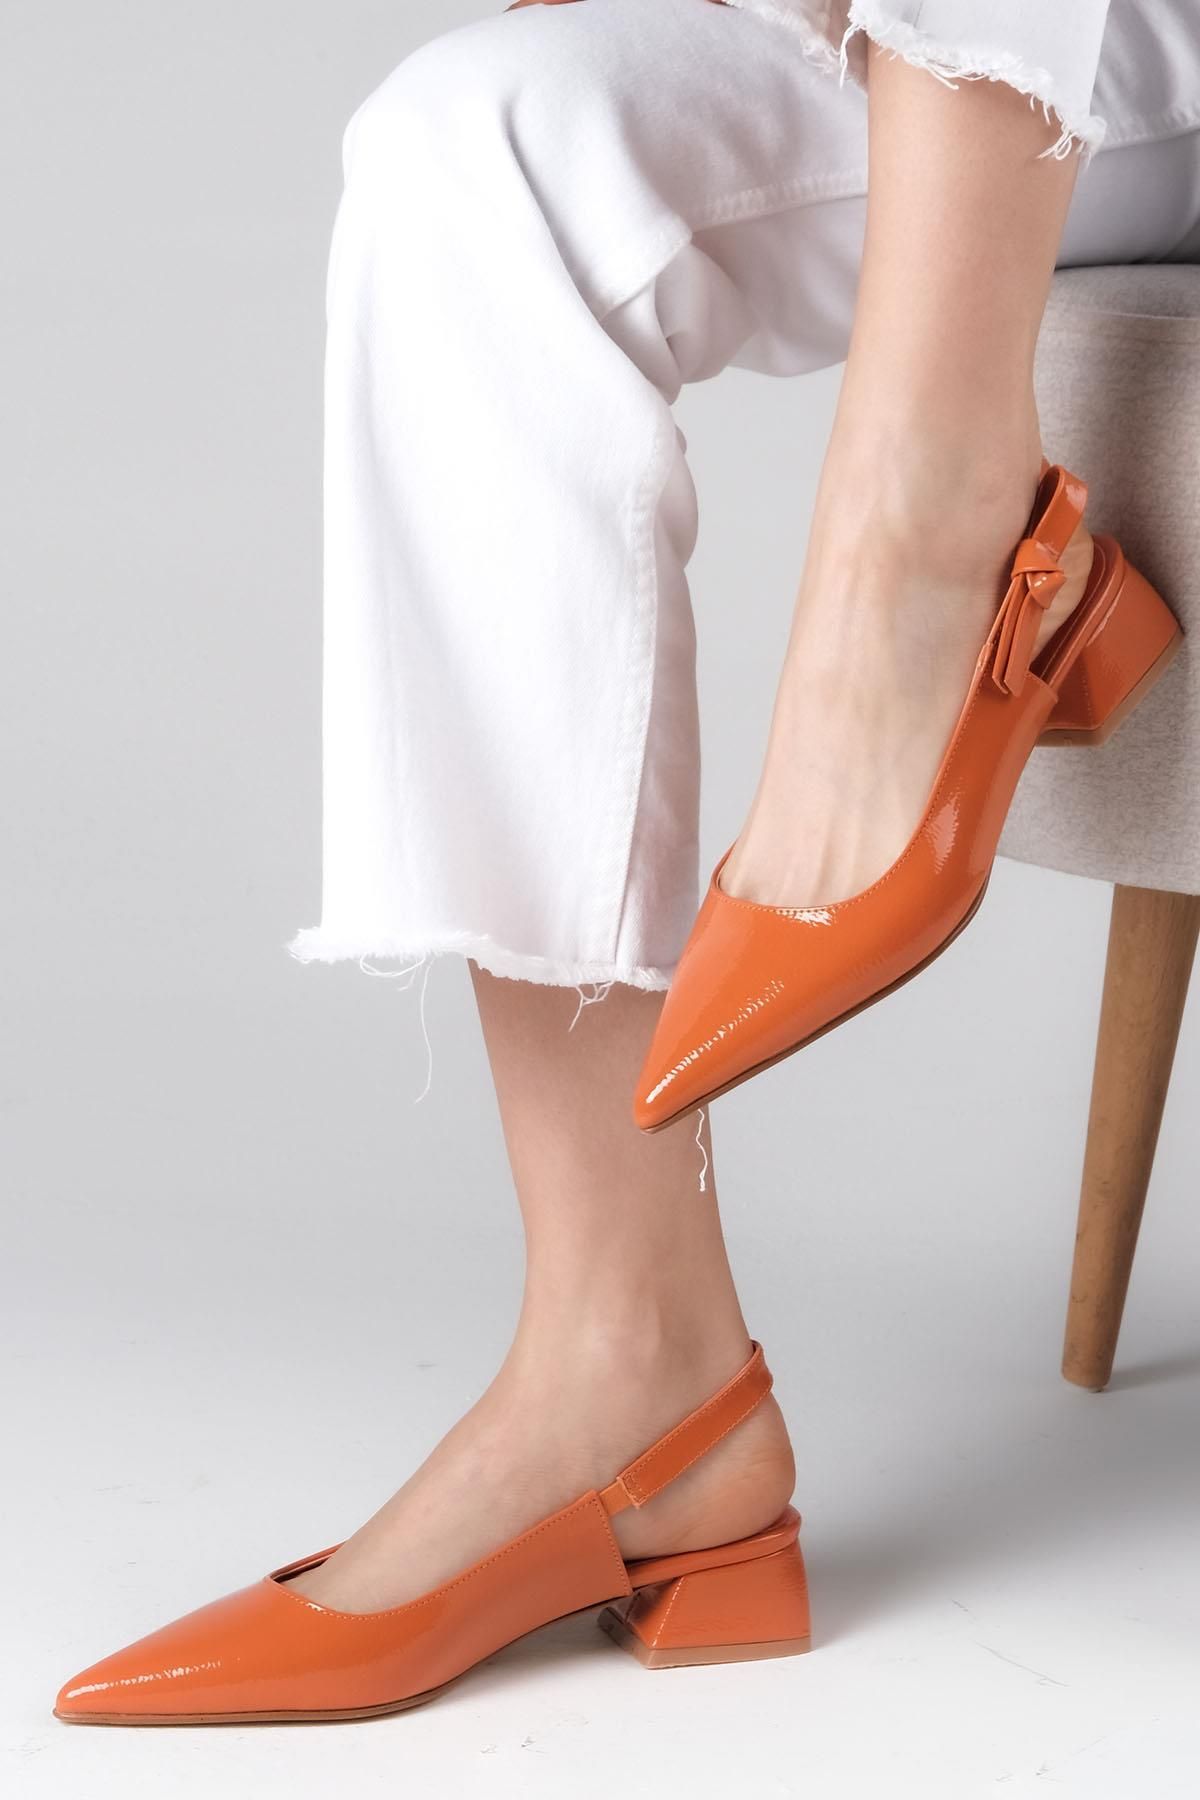 Mio Gusto Kathy Turuncu Renk Rugan Yandan Fiyonklu Arkası Açık Kadın Kısa Topuklu Ayakkabı